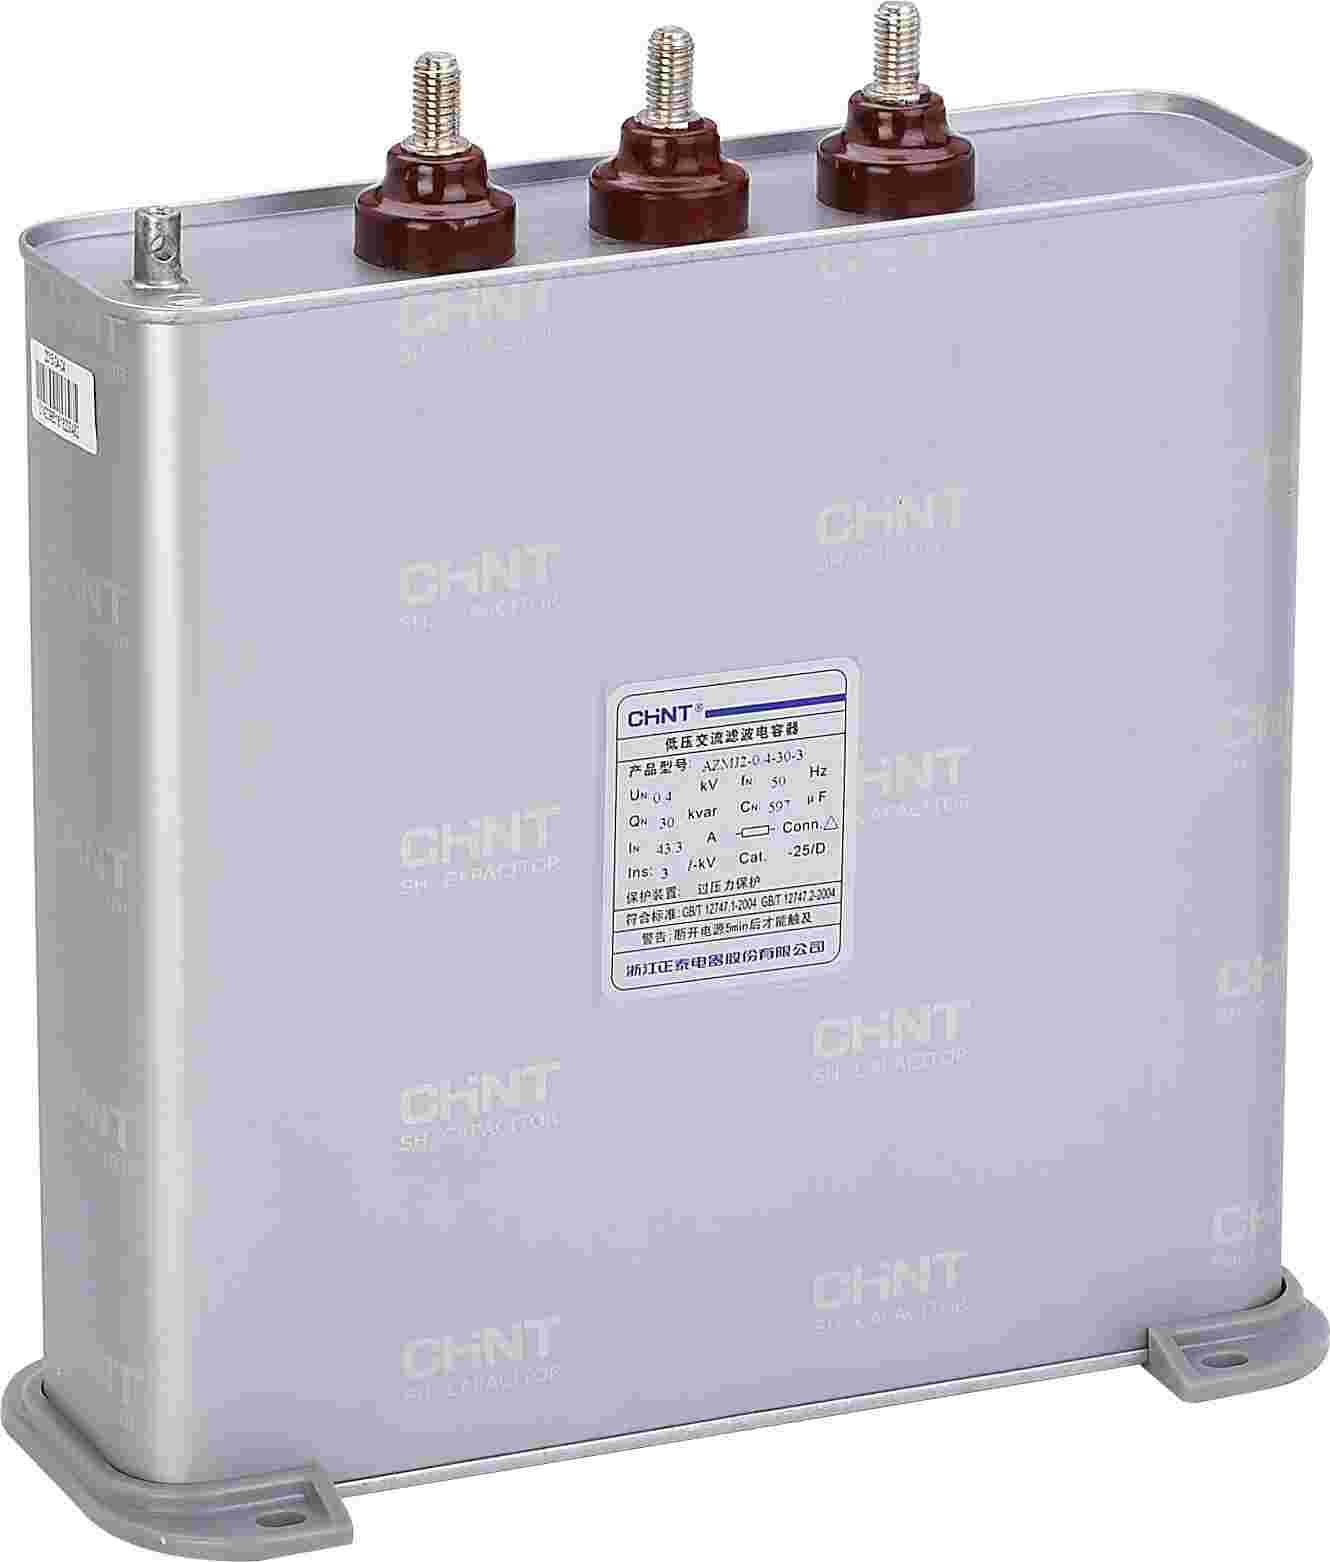 AZMJ2-0.4-30-3 低压交流滤波电容器（抗谐）侧俯图.png